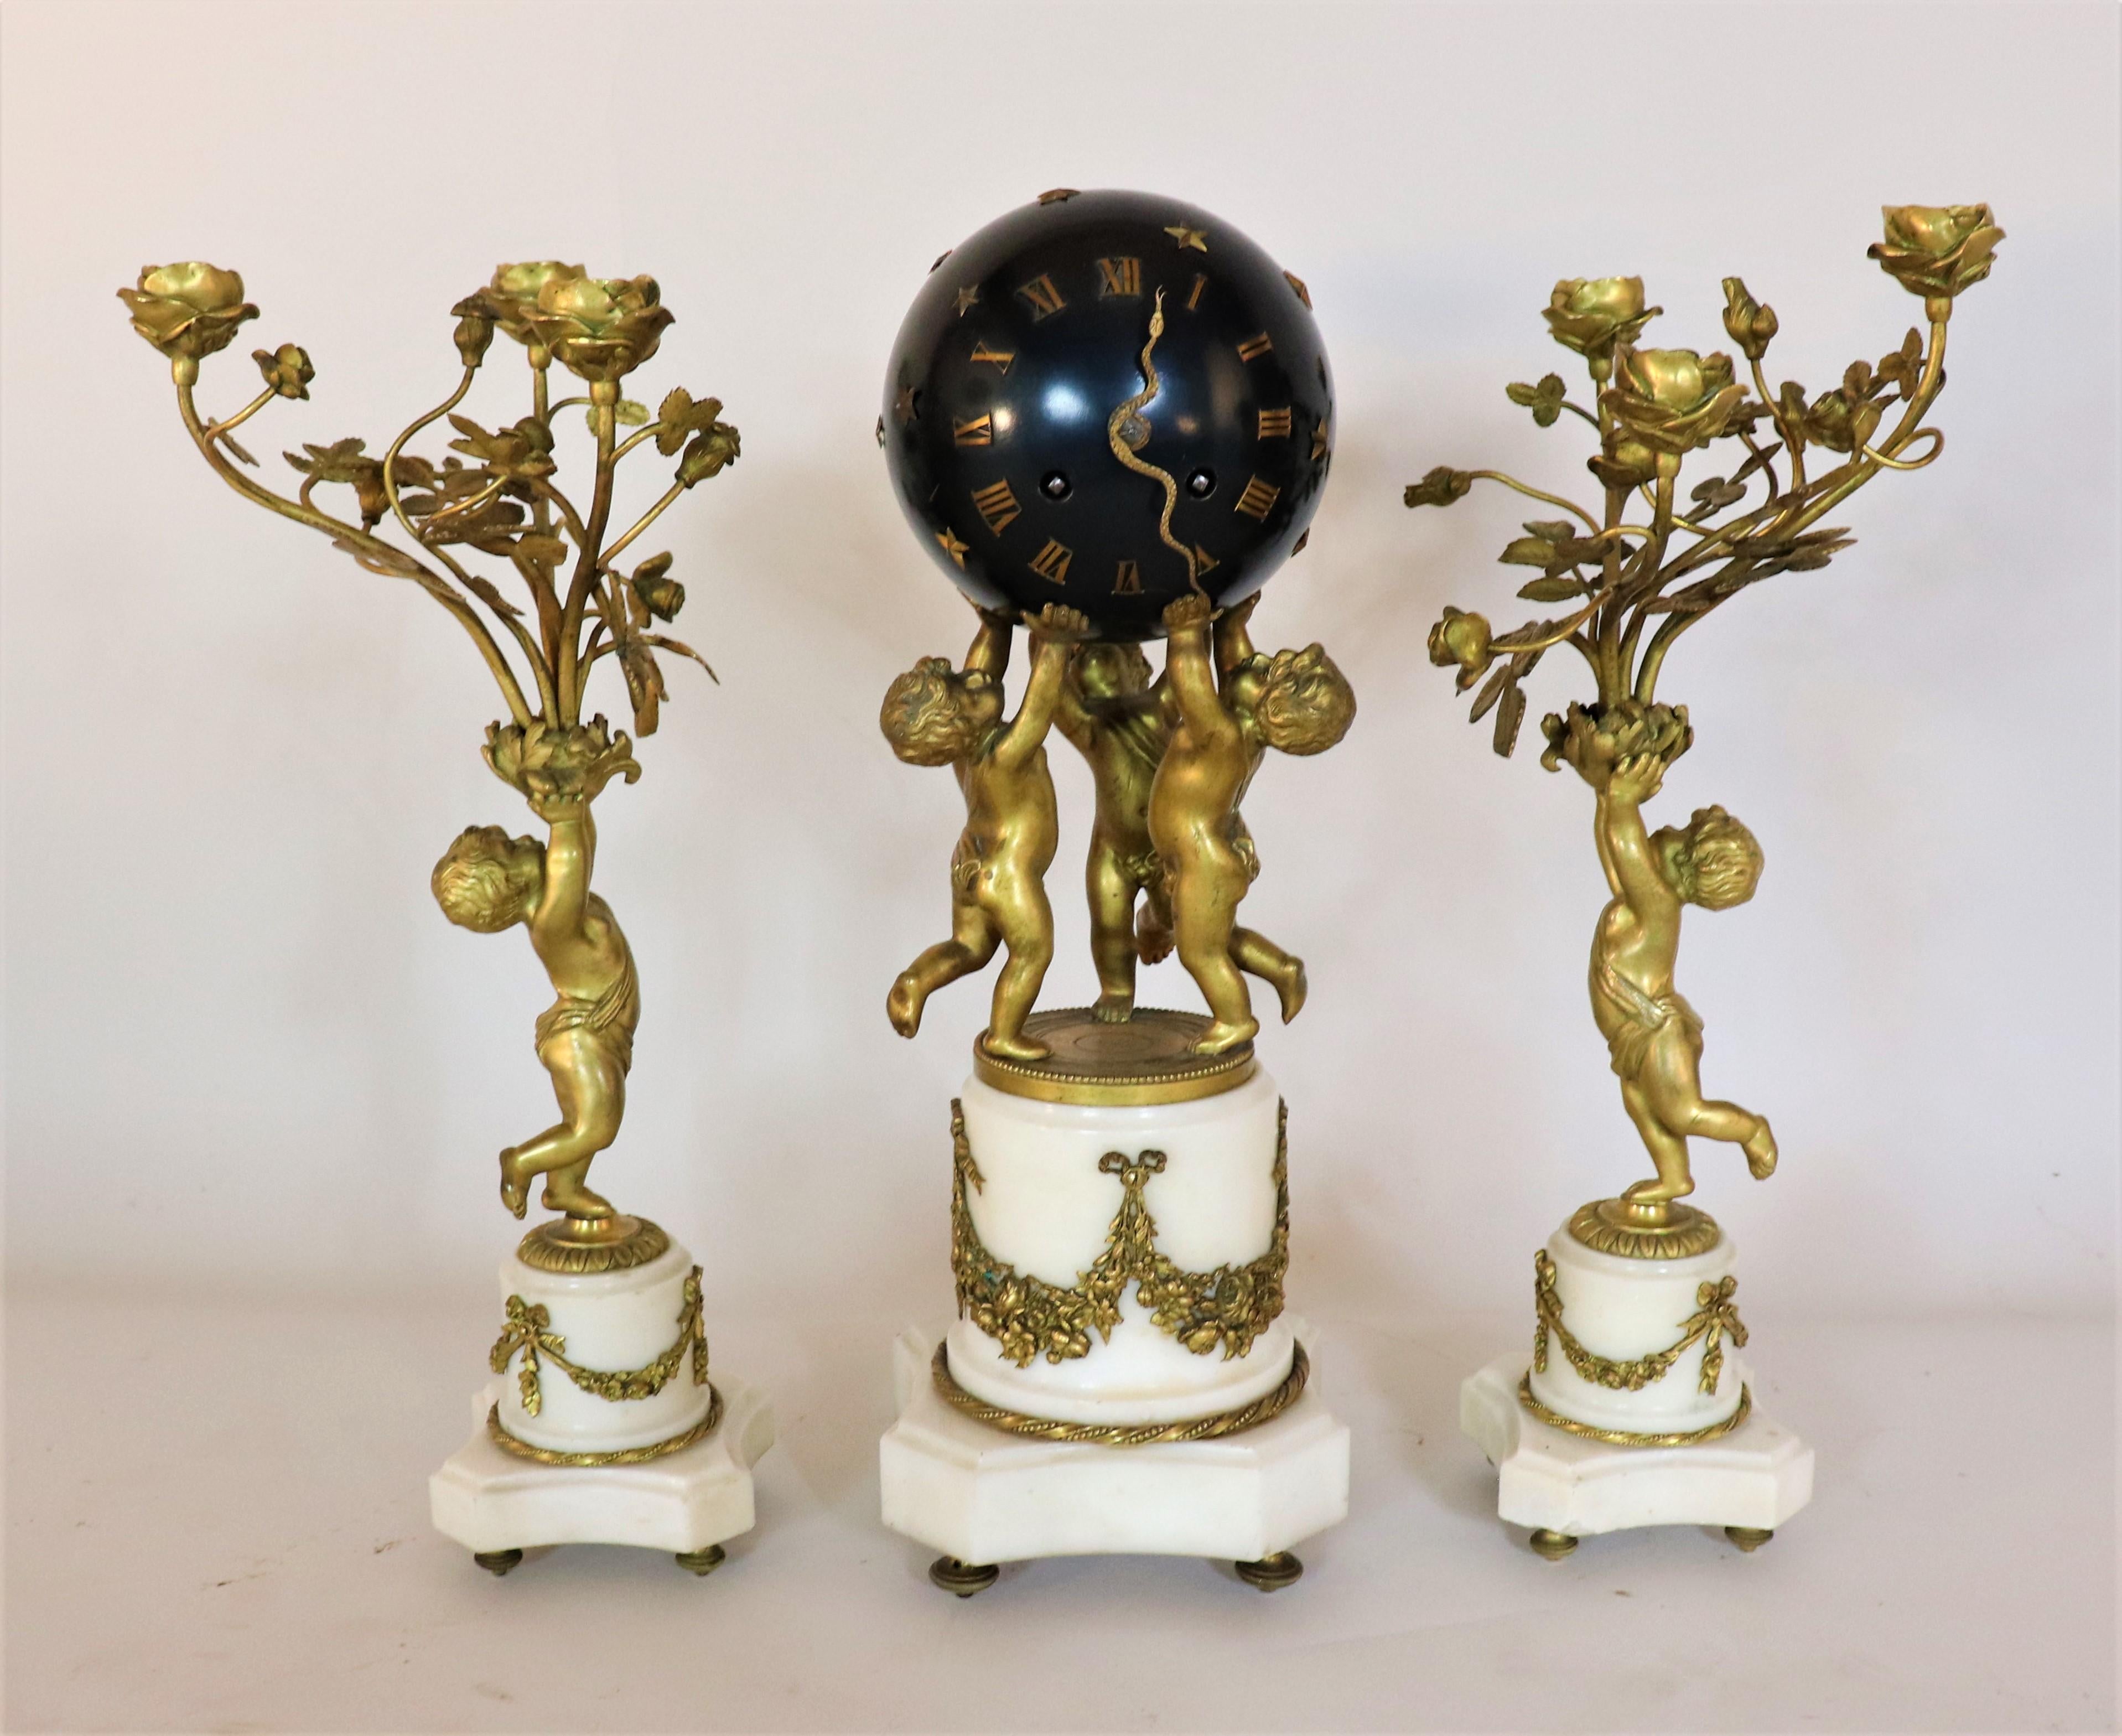 CIRCA 1890 Französisch Jewell Escape Bewegung Bronze und Marmor Drei Stück Uhr und Kerze Garnitur. Die Uhr dieses Sets besteht aus drei bronzenen Putten, die eine schwarze, kugelförmige Uhr mit römischen Ziffern hochhalten. Es handelt sich um eine